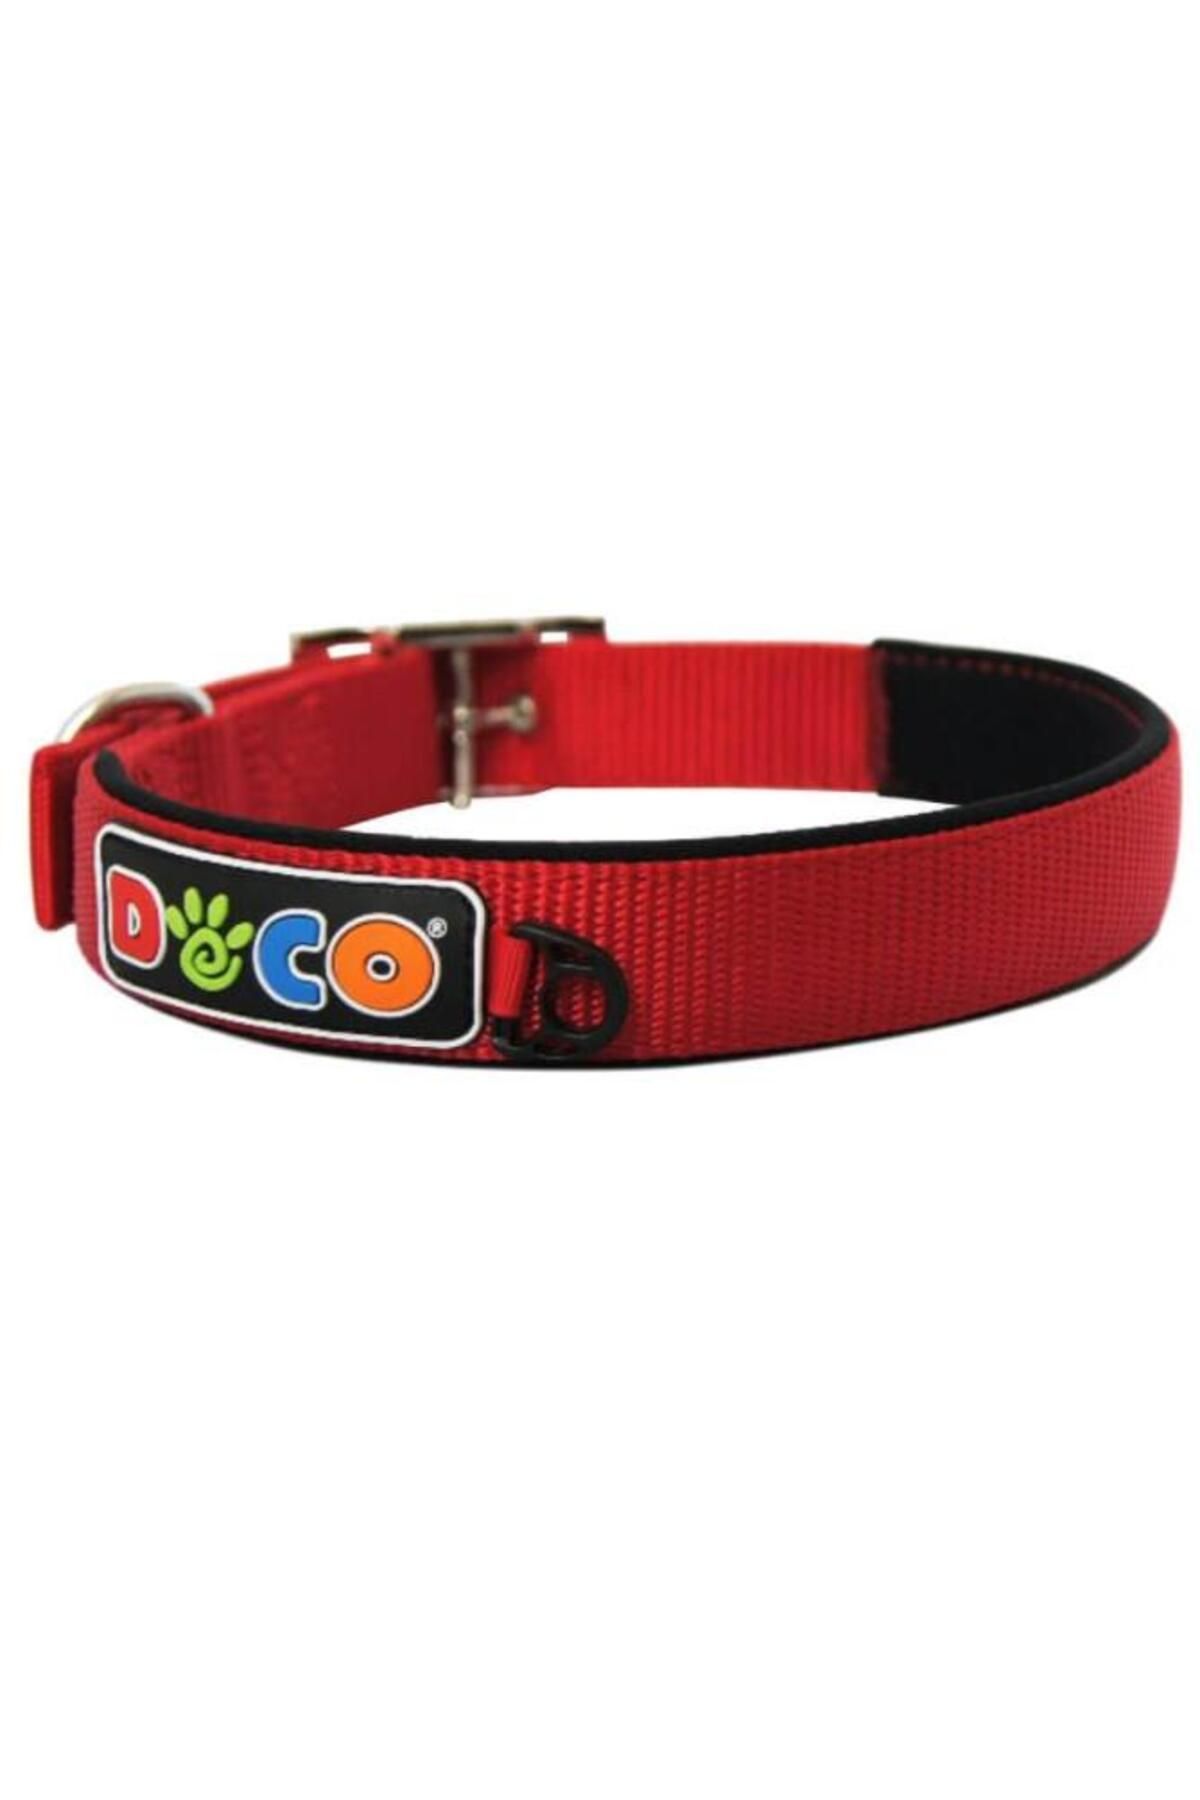 Doco Dokuma Köpek Boyun Tasması 3,8x50-65cm Kırmızı